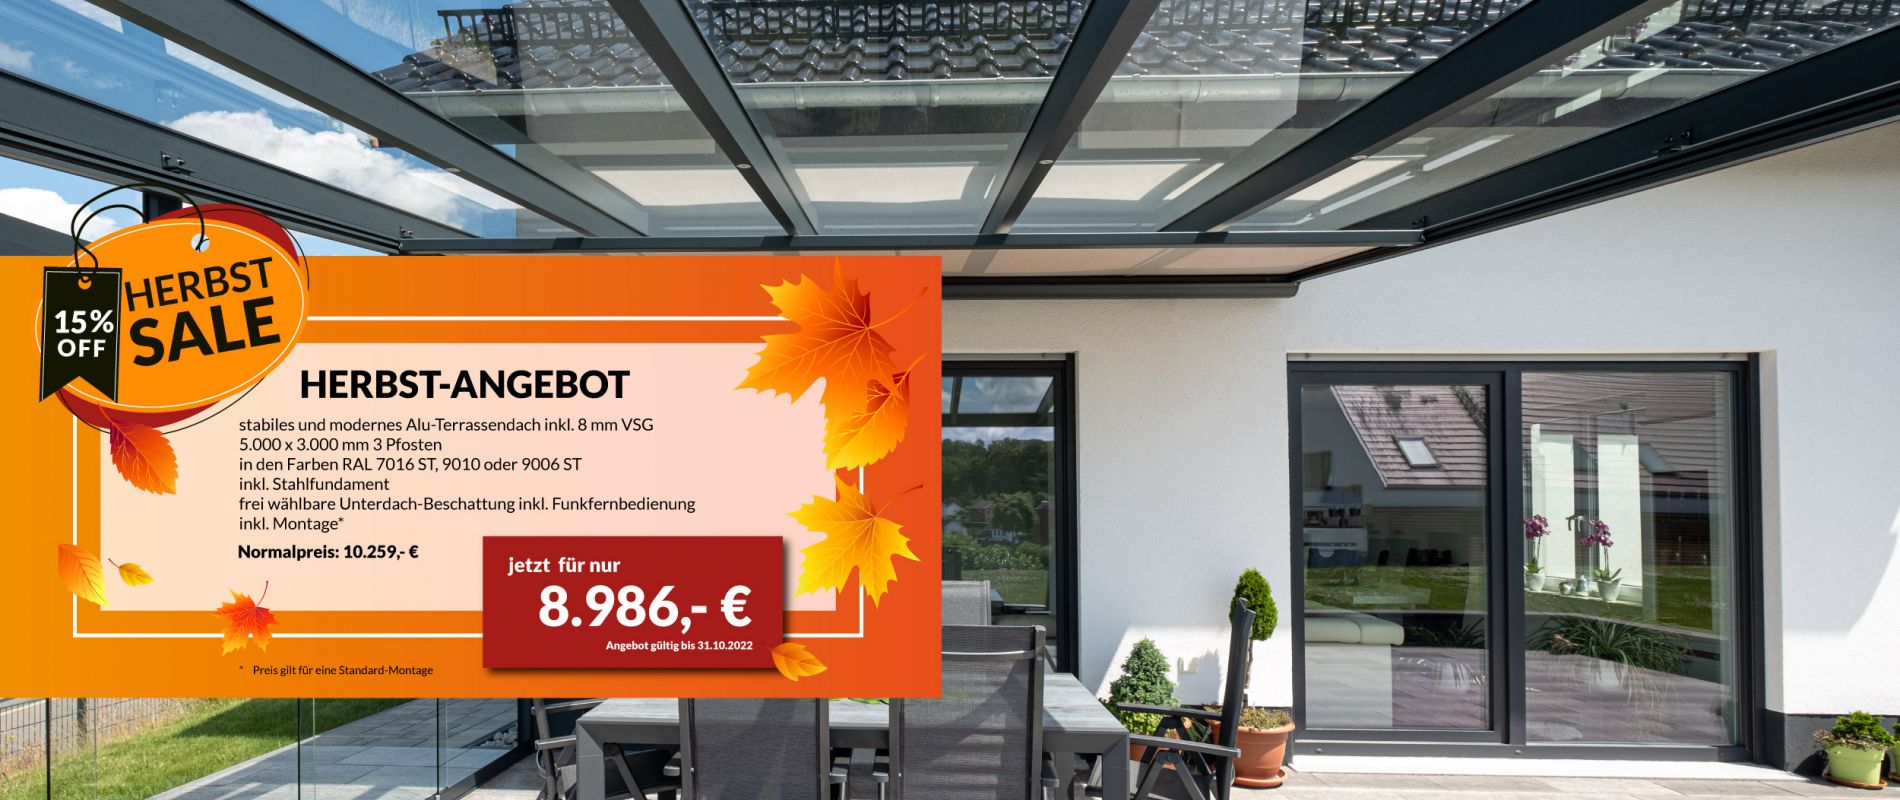 Herbst-Angebot: Terrassendach mit Beschattung für 8986 €